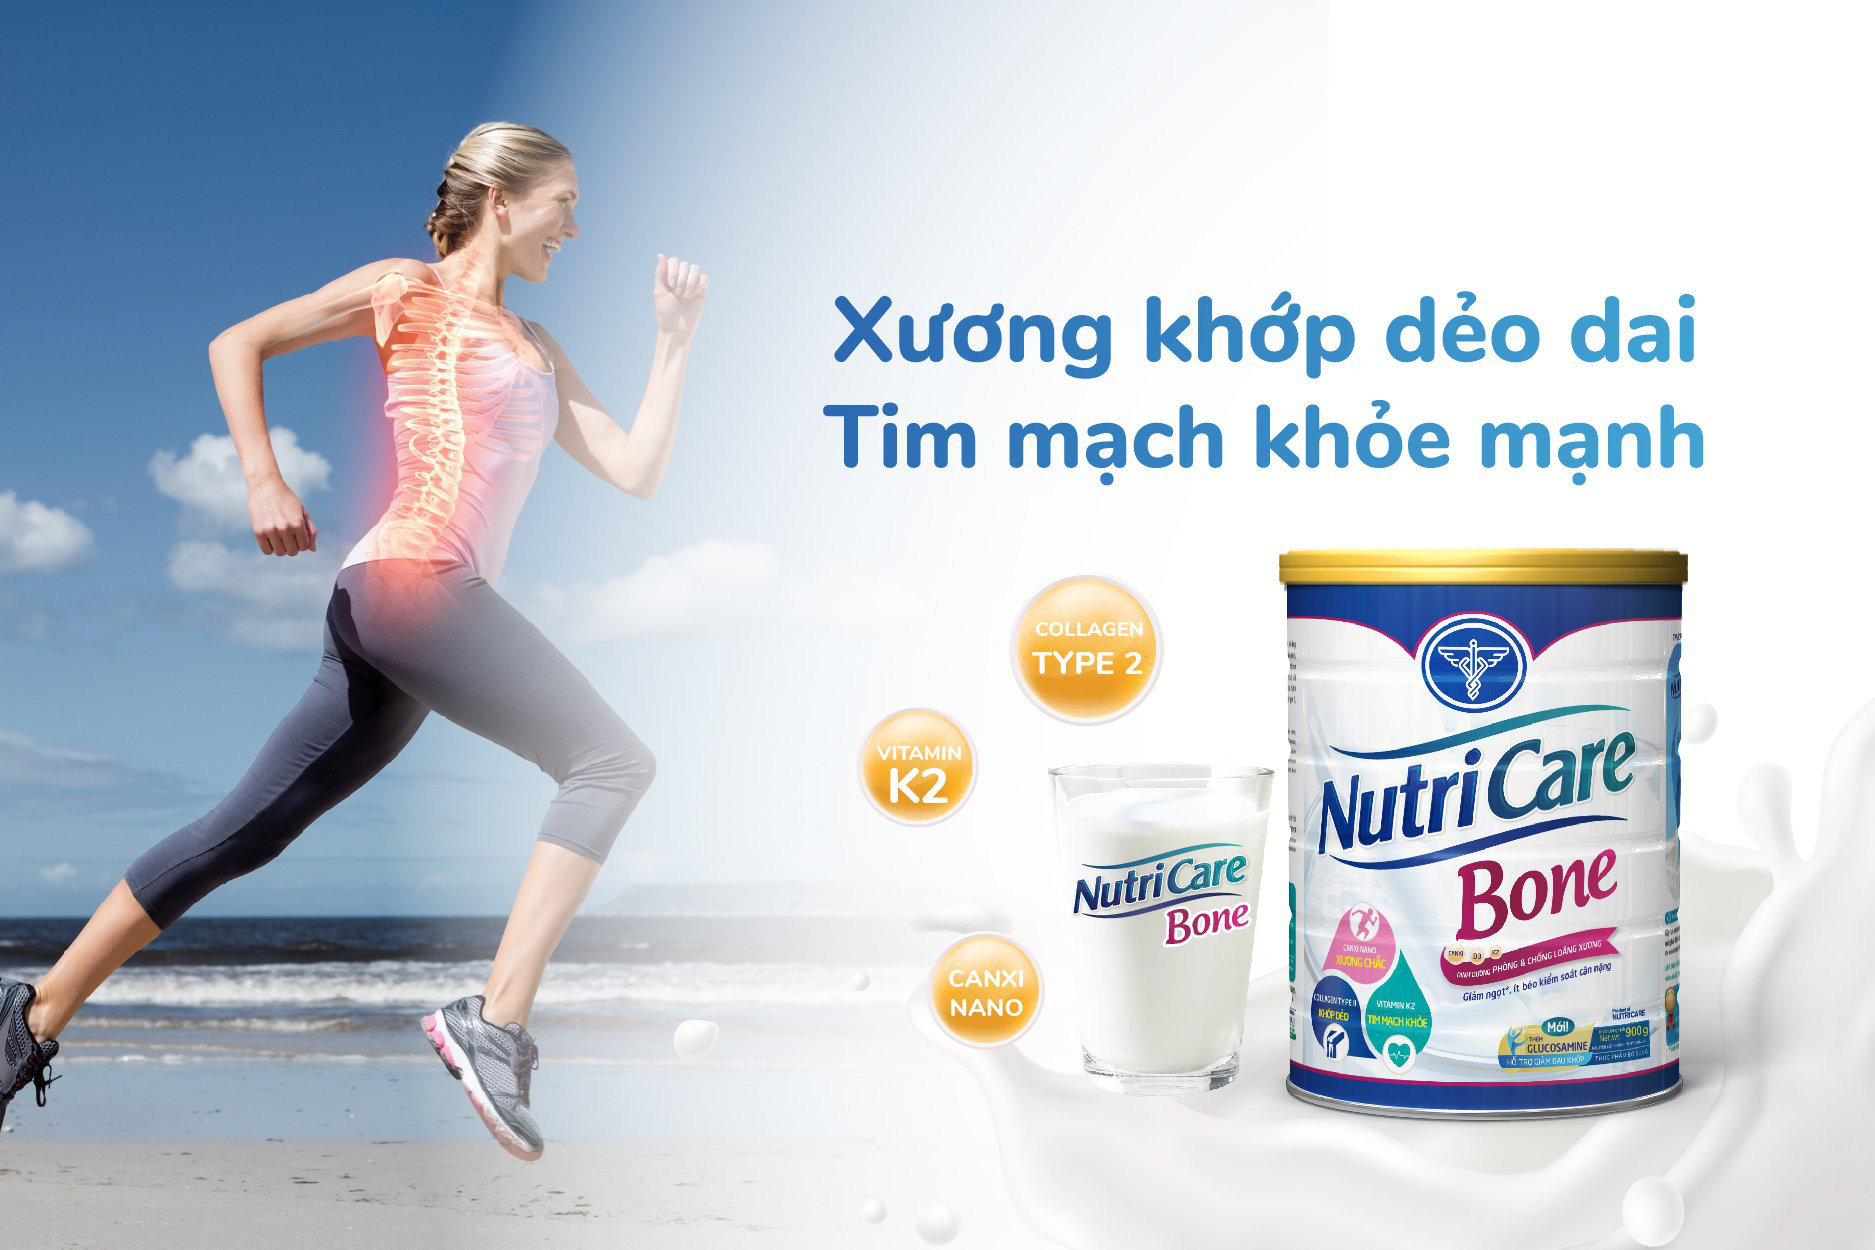 Sữa Nutricare Bone cung cấp vitamin K2 vừa chắc xương lại tốt cho tim mạch - Ảnh 1.